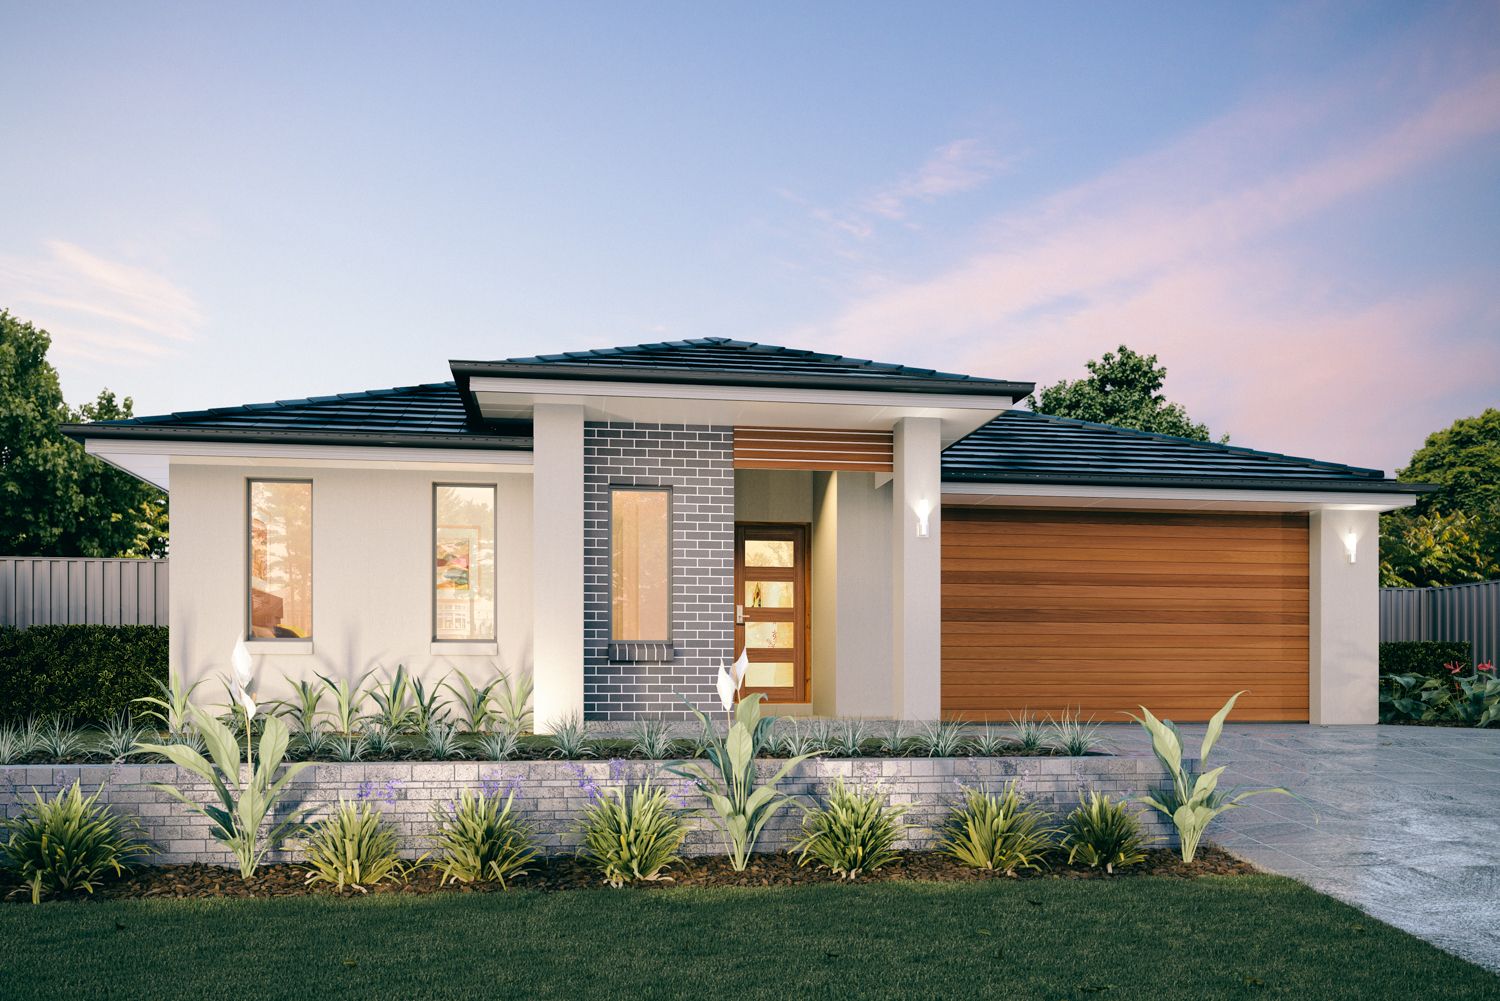 4 bedrooms New Home Designs in  HEDDON GRETA NSW, 2321